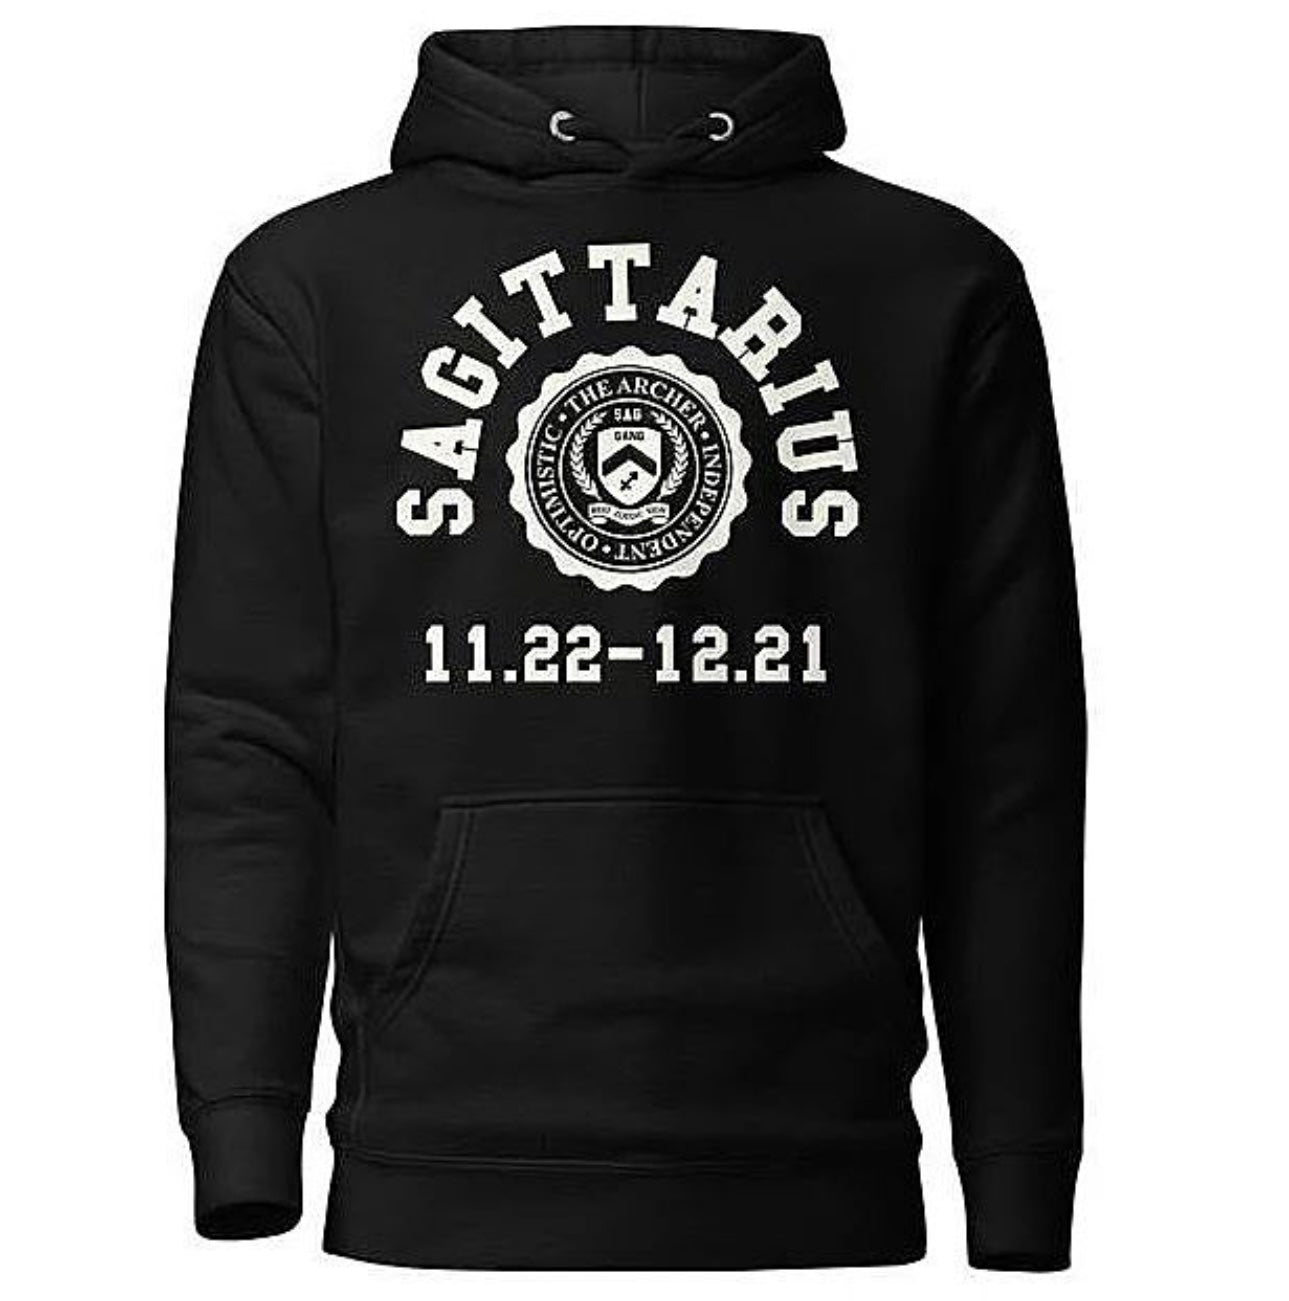 Sagittarius hoodie